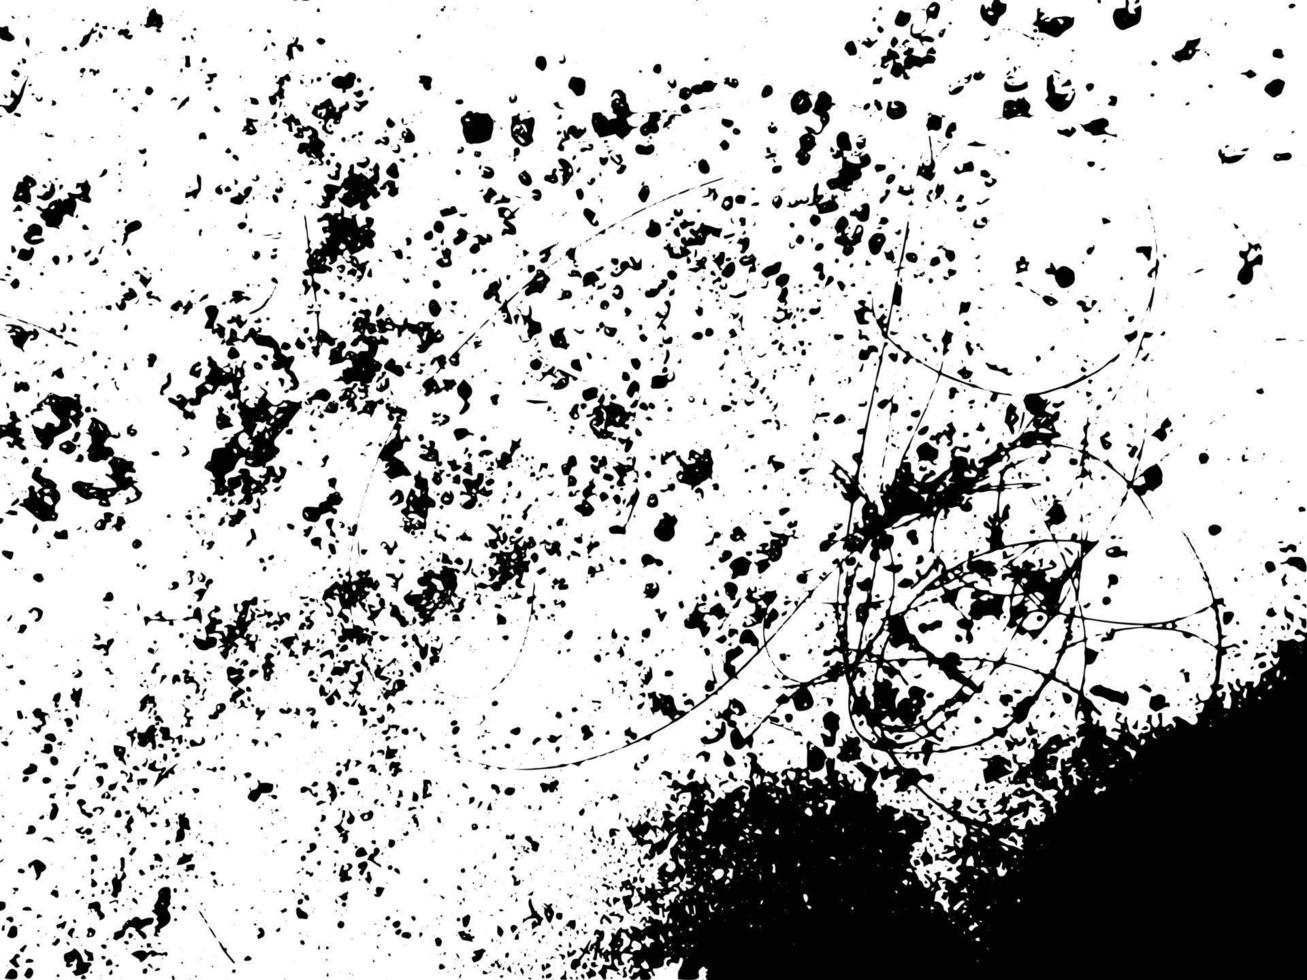 Schwarz-Weiß-abstrakter urbaner Grunge-Texturvektor vektor